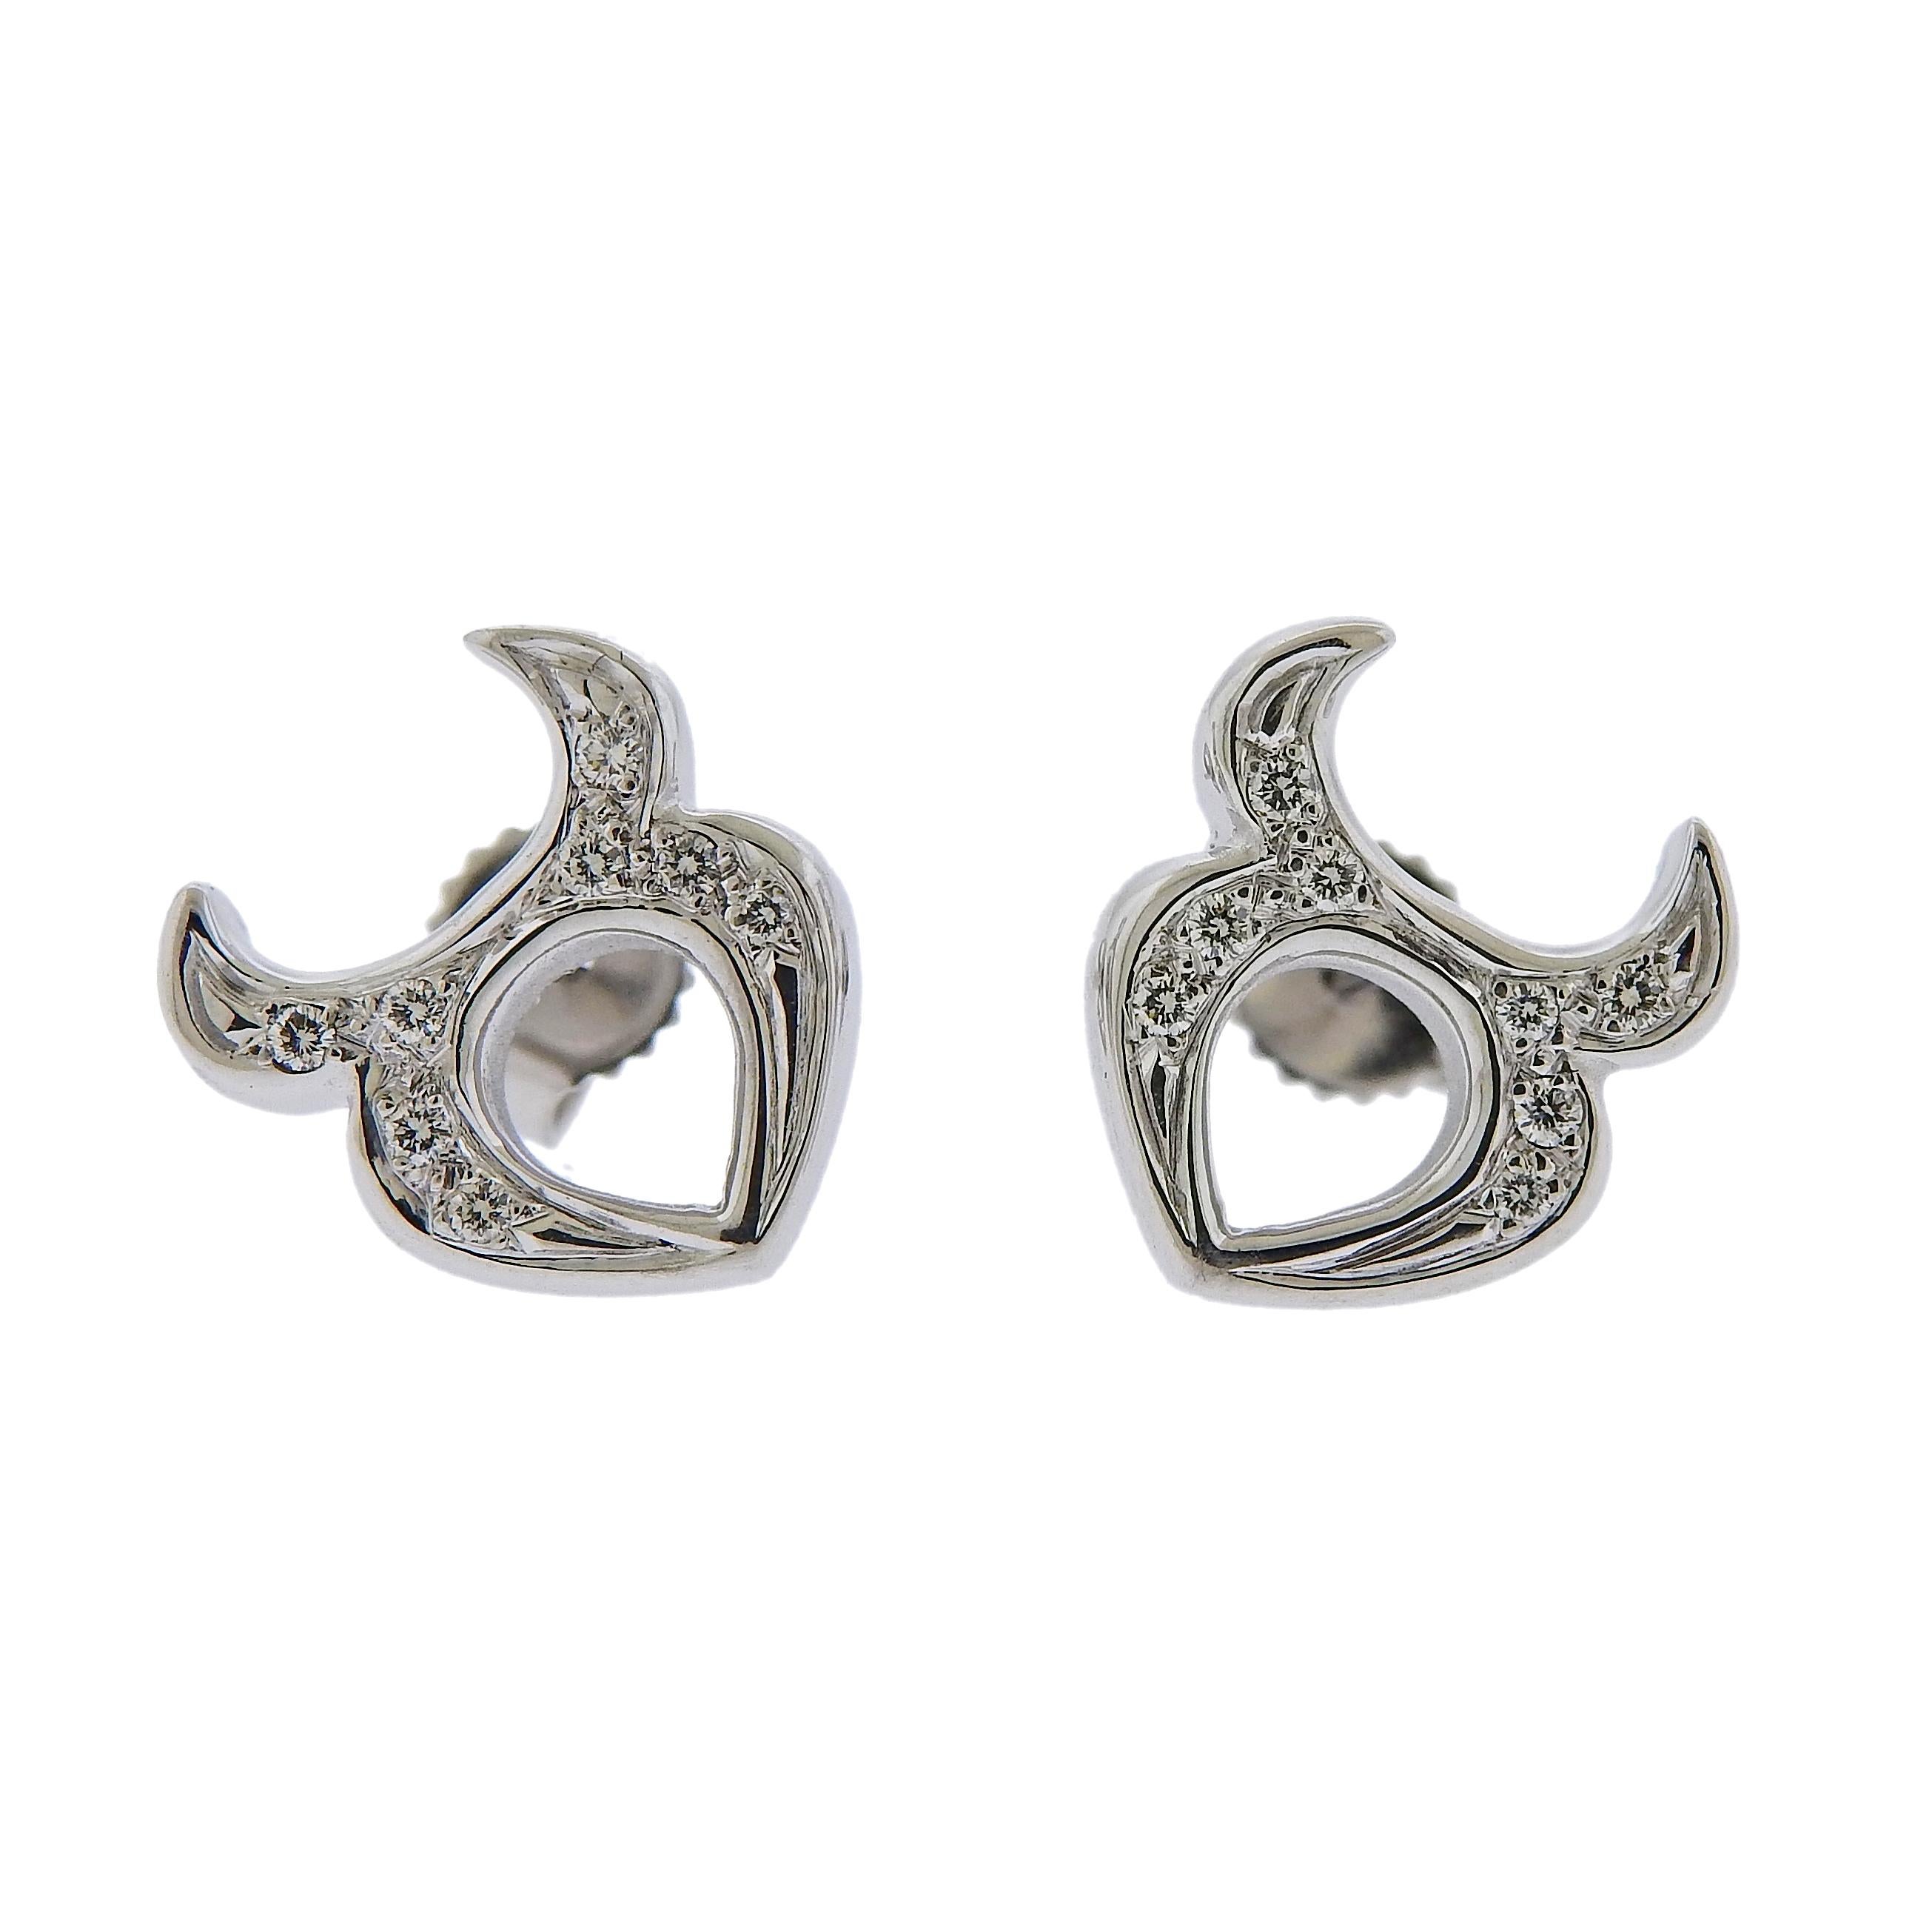 zodiac signs as earrings